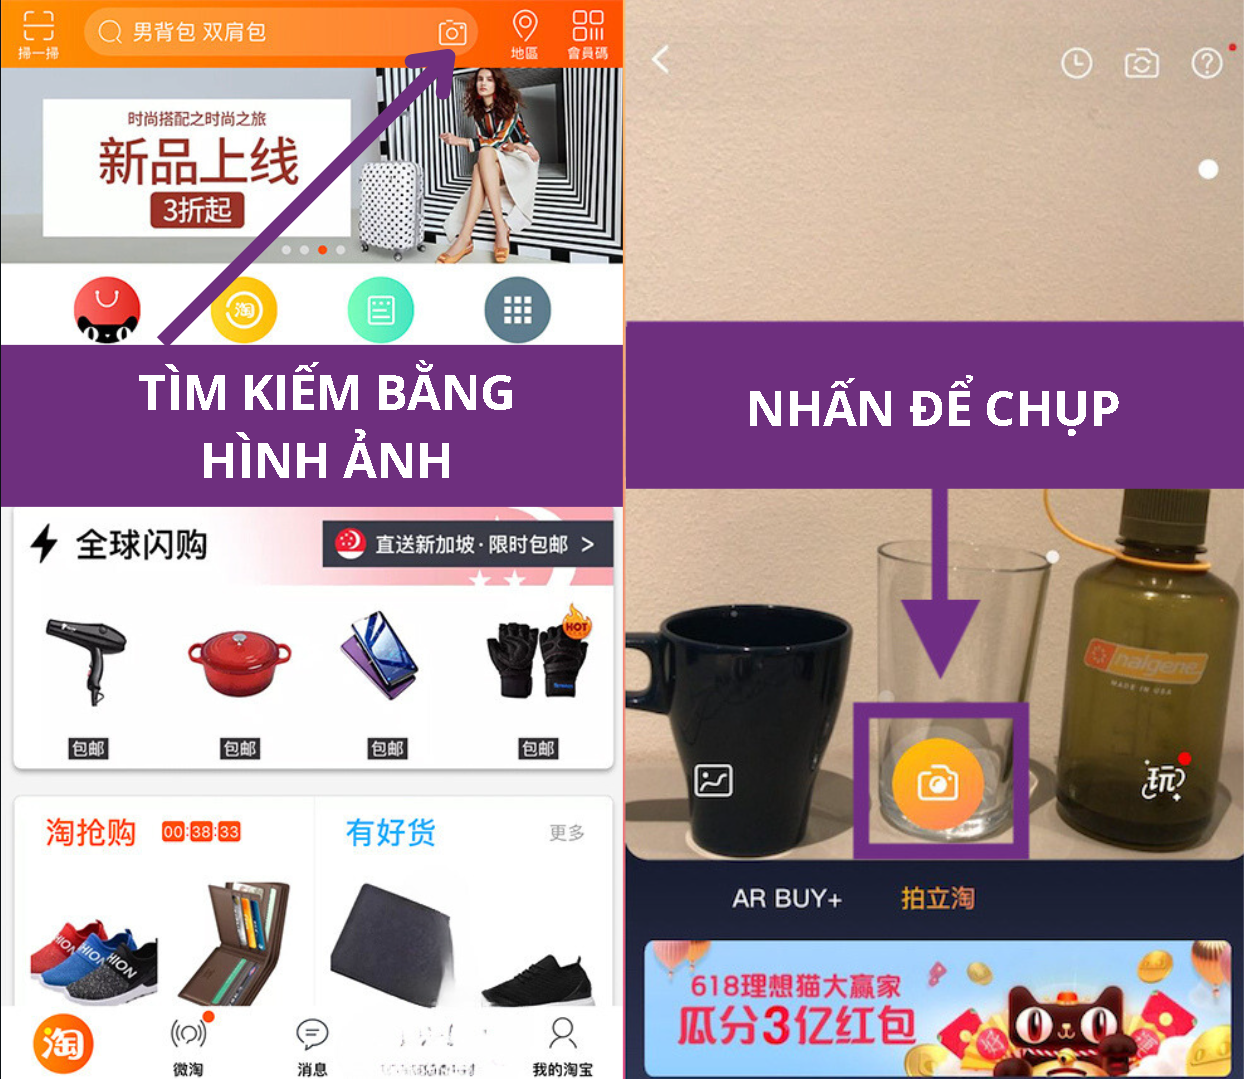 Nhấn vào biểu tượng máy ảnh trên thanh tìm kiếm Taobao để tìm kiếm sản phẩm bằng hình ảnh